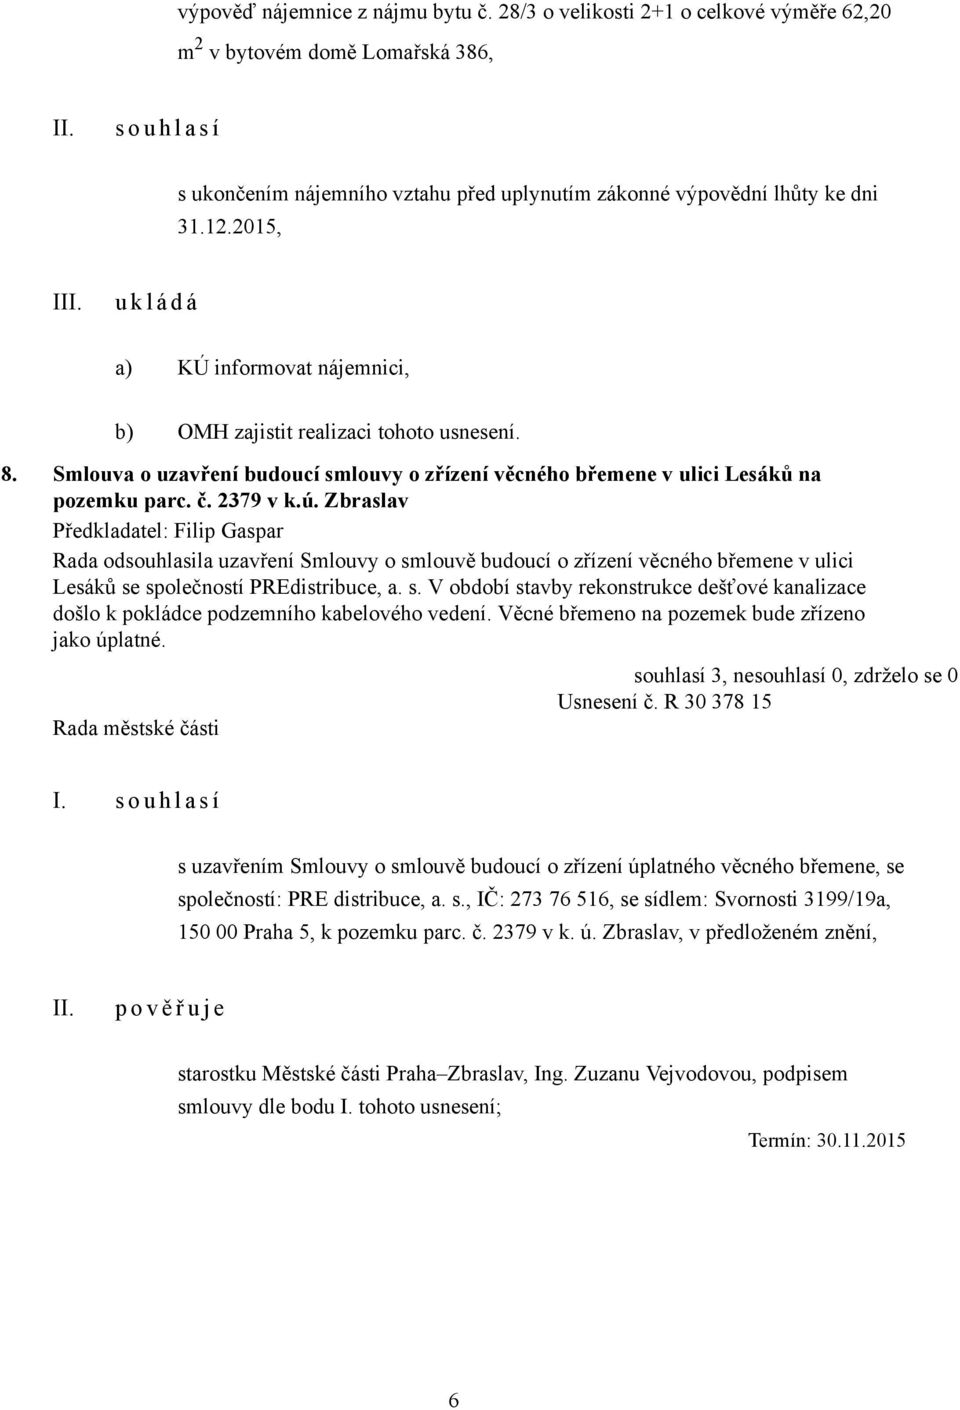 2015, I a) KÚ informovat nájemnici, b) OMH zajistit realizaci tohoto usnesení. 8. Smlouva o uzavření budoucí smlouvy o zřízení věcného břemene v ulici Lesáků na pozemku parc. č. 2379 v k.ú.